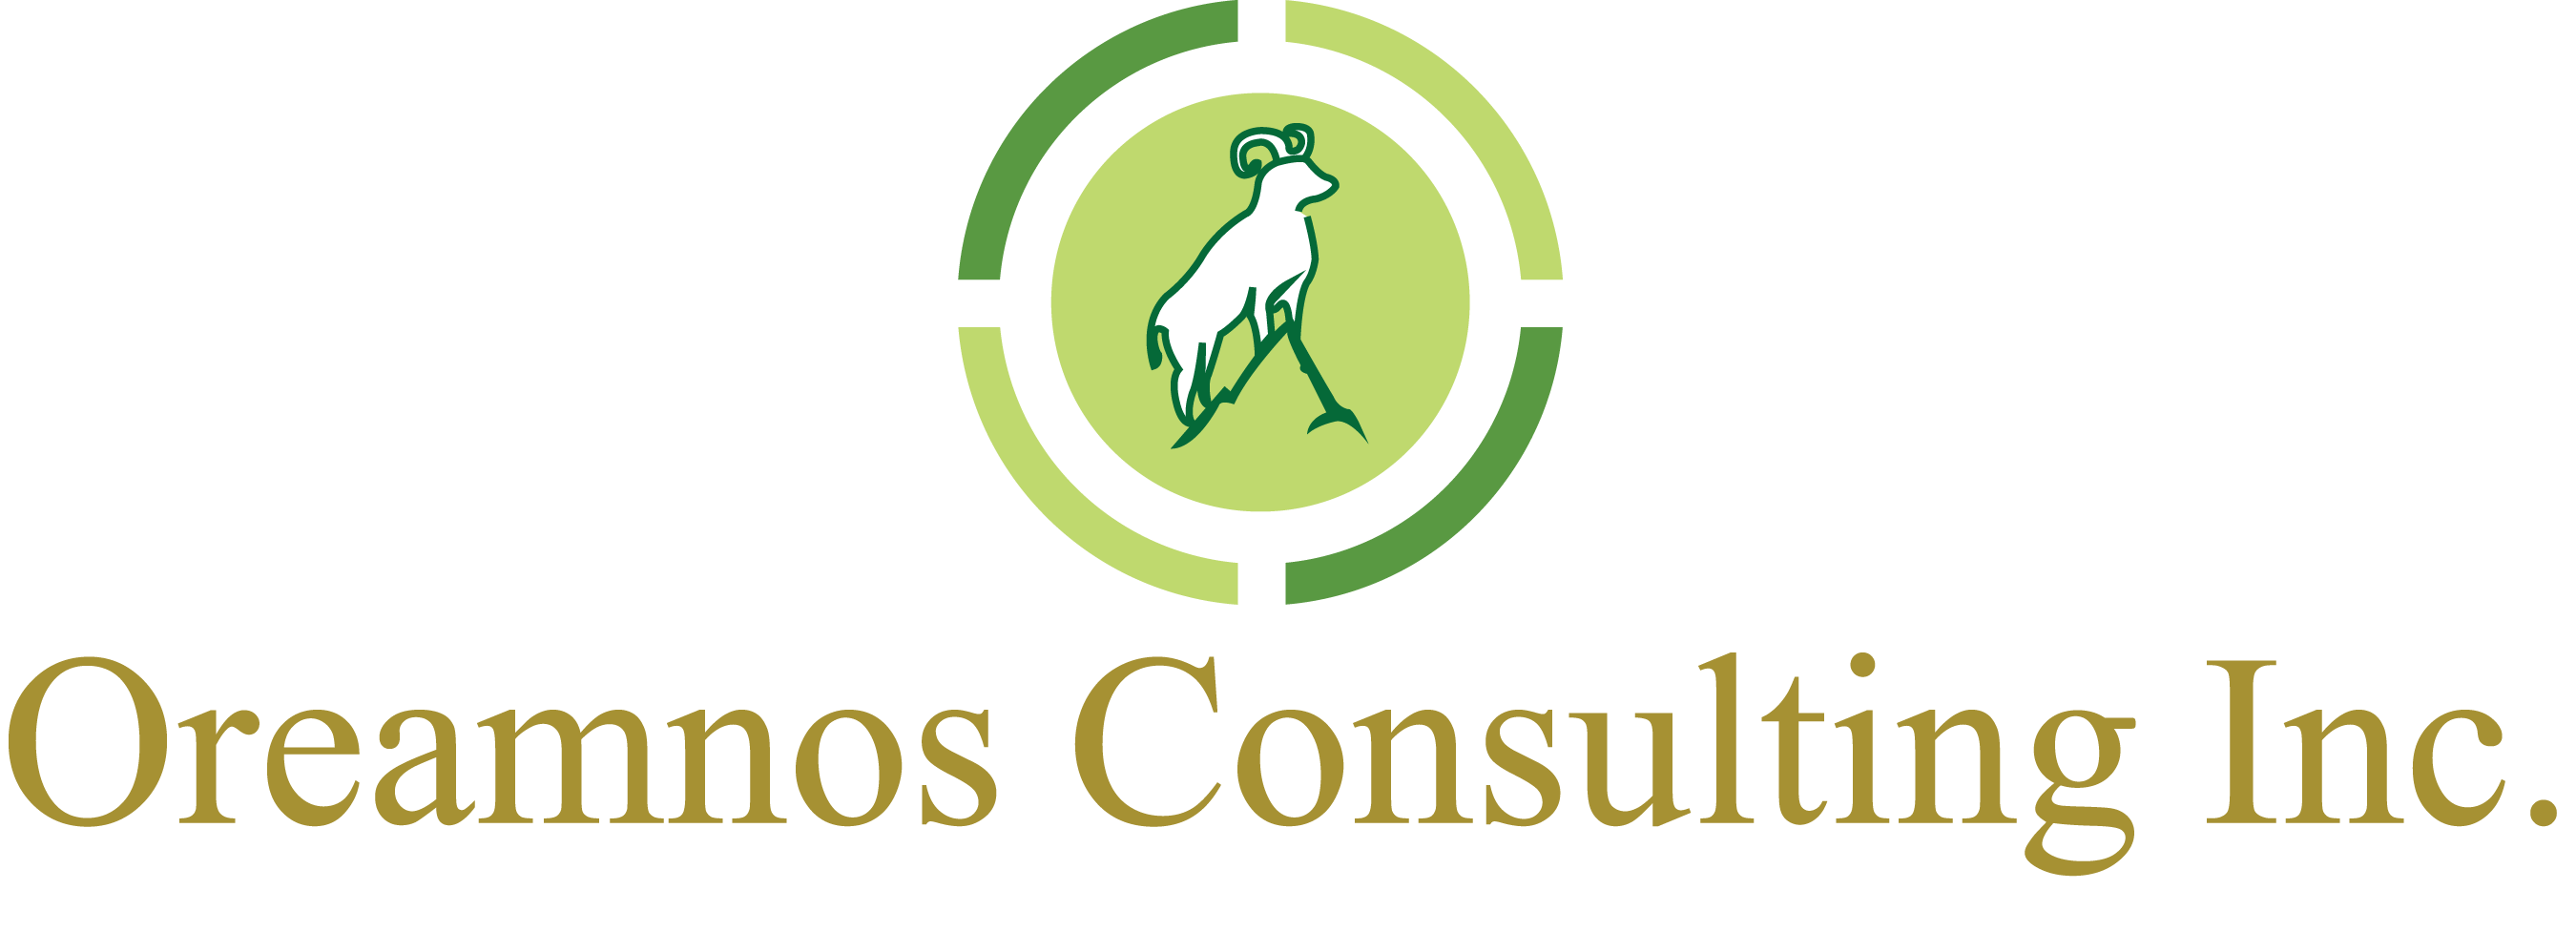 Oreamnos Consulting Inc. logo